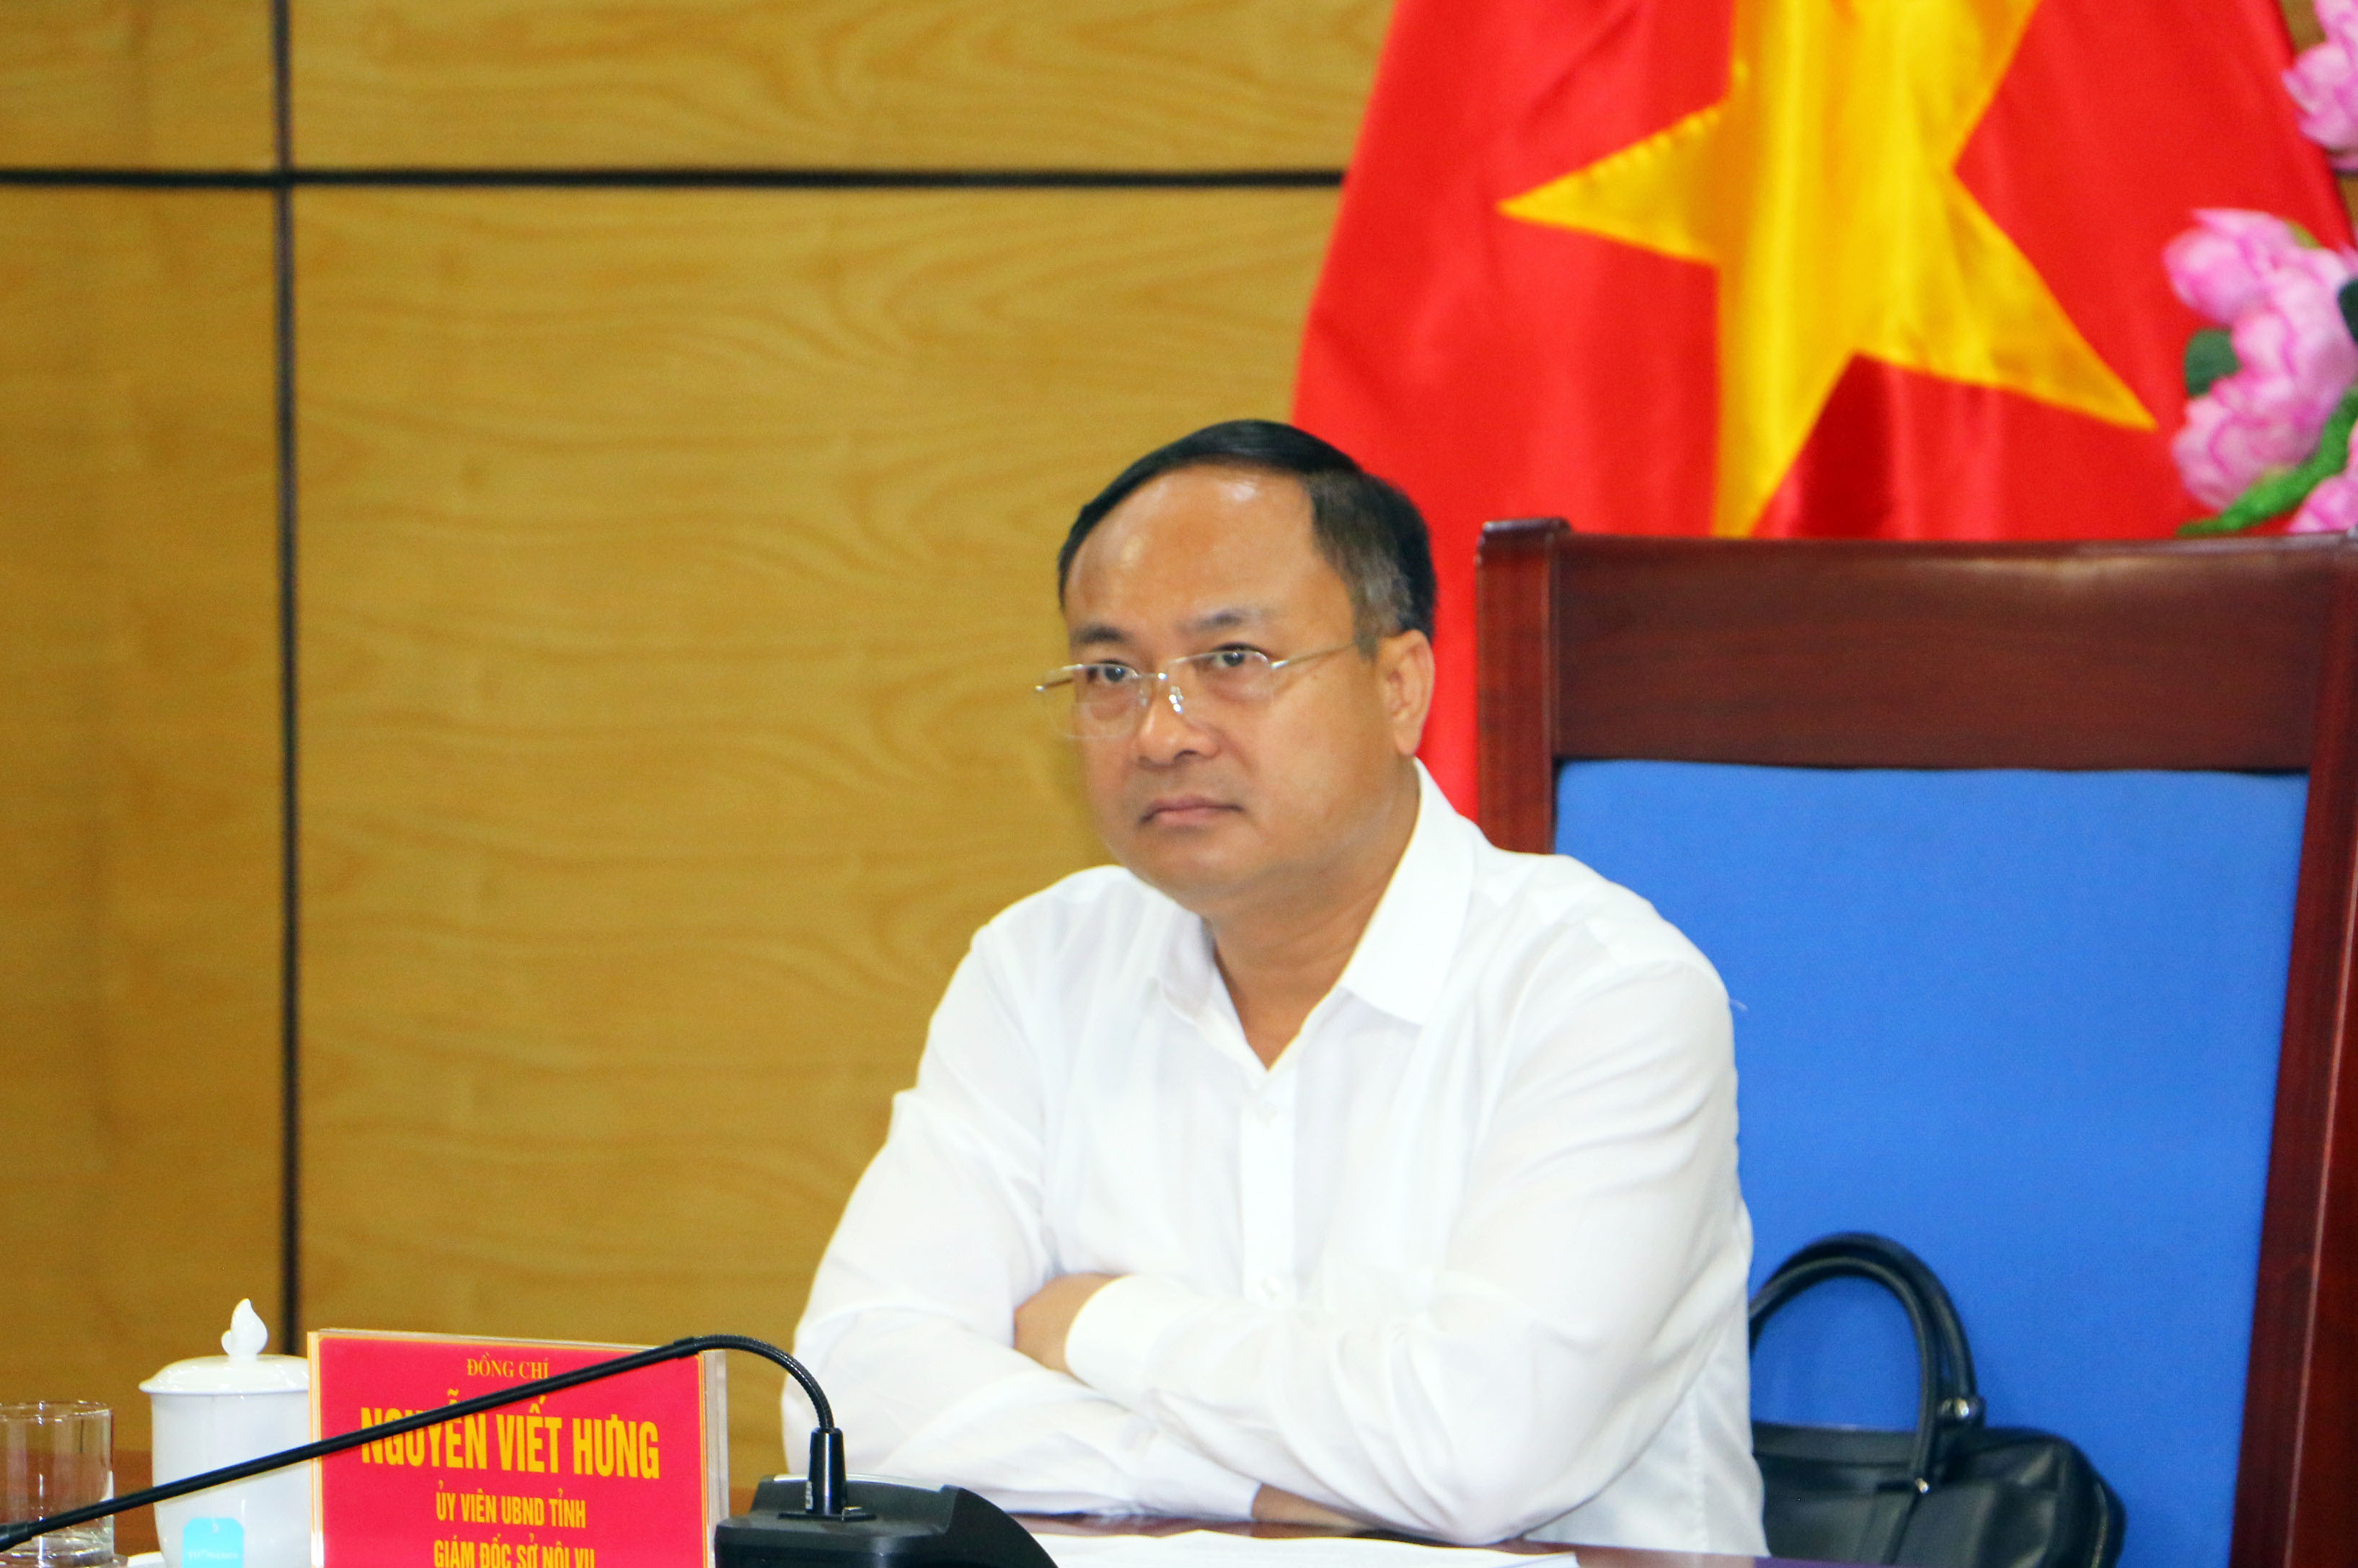 Đồng chí Nguyễn Viết Hưng - Giám đốc Sở Nội vụ chủ trì điểm cầu tại UBND tỉnh. Ảnh: An Quỳnh.